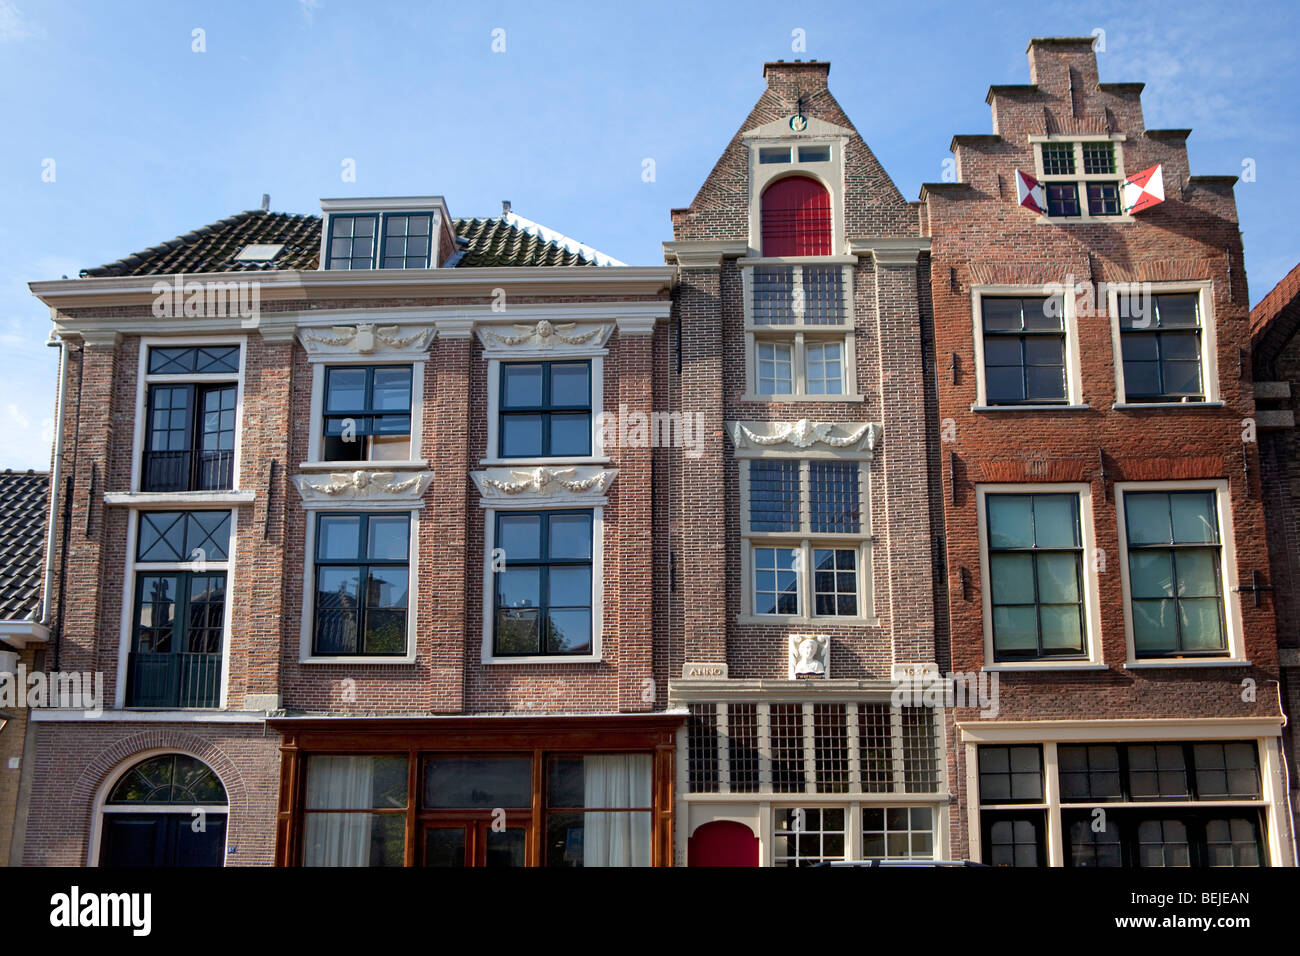 Nieuwstraat, façades du 16e siècle à Leiden, Hollande Banque D'Images